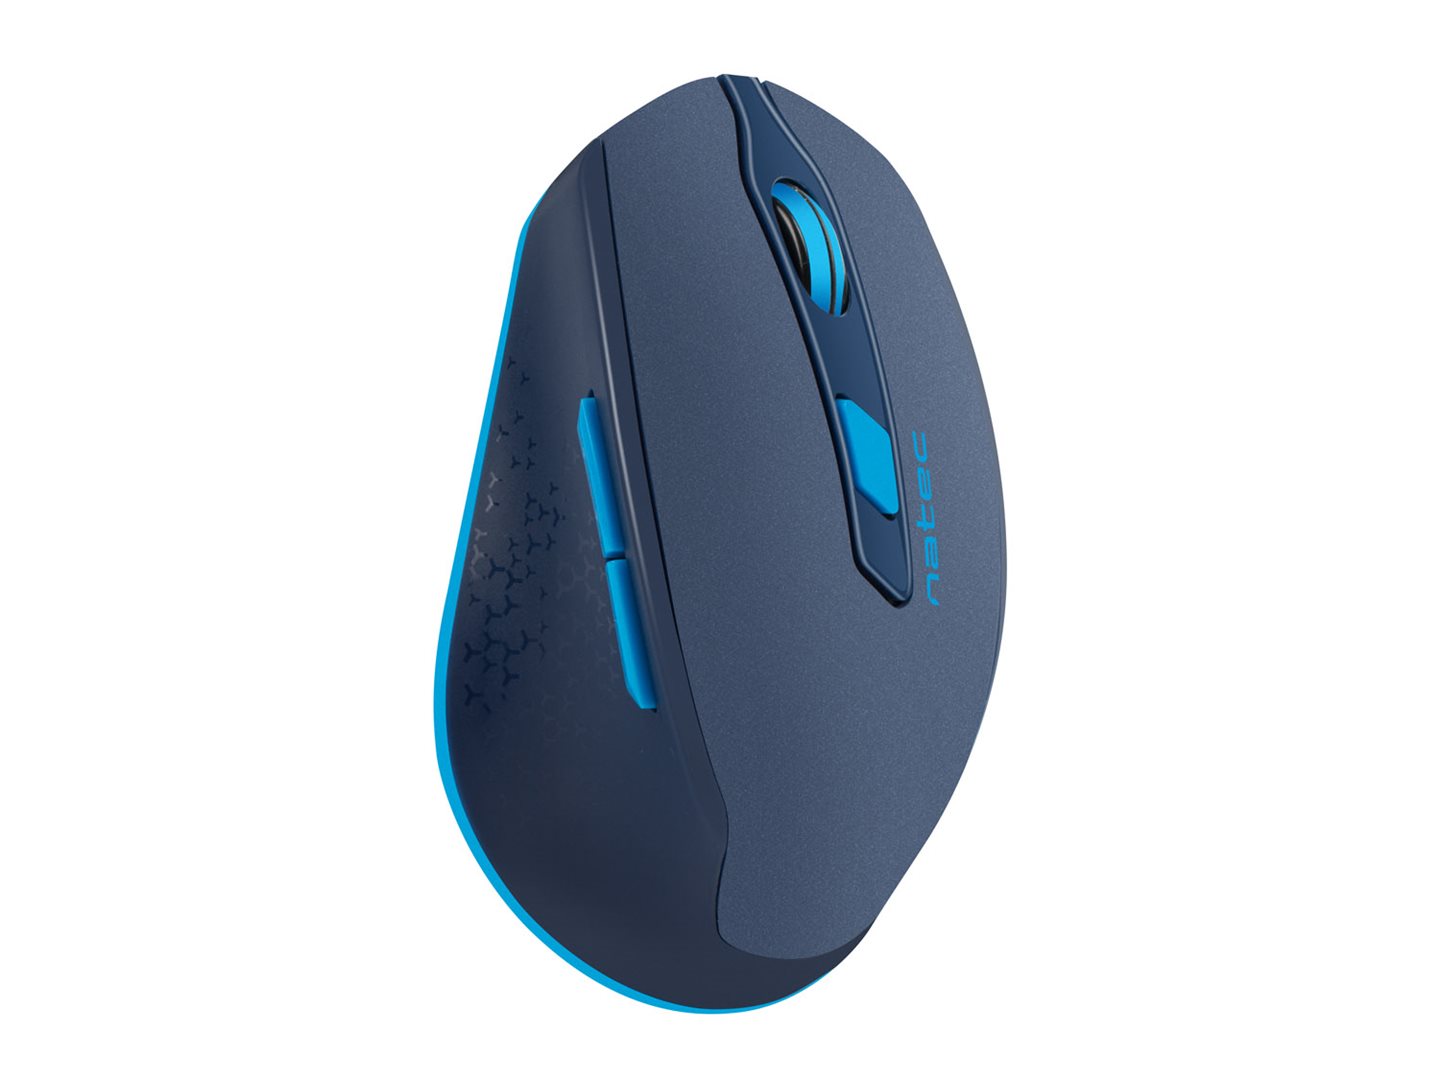 Tichá ergonomická myš Natec Siskin 2400 DPI, bezdrátová, modrá